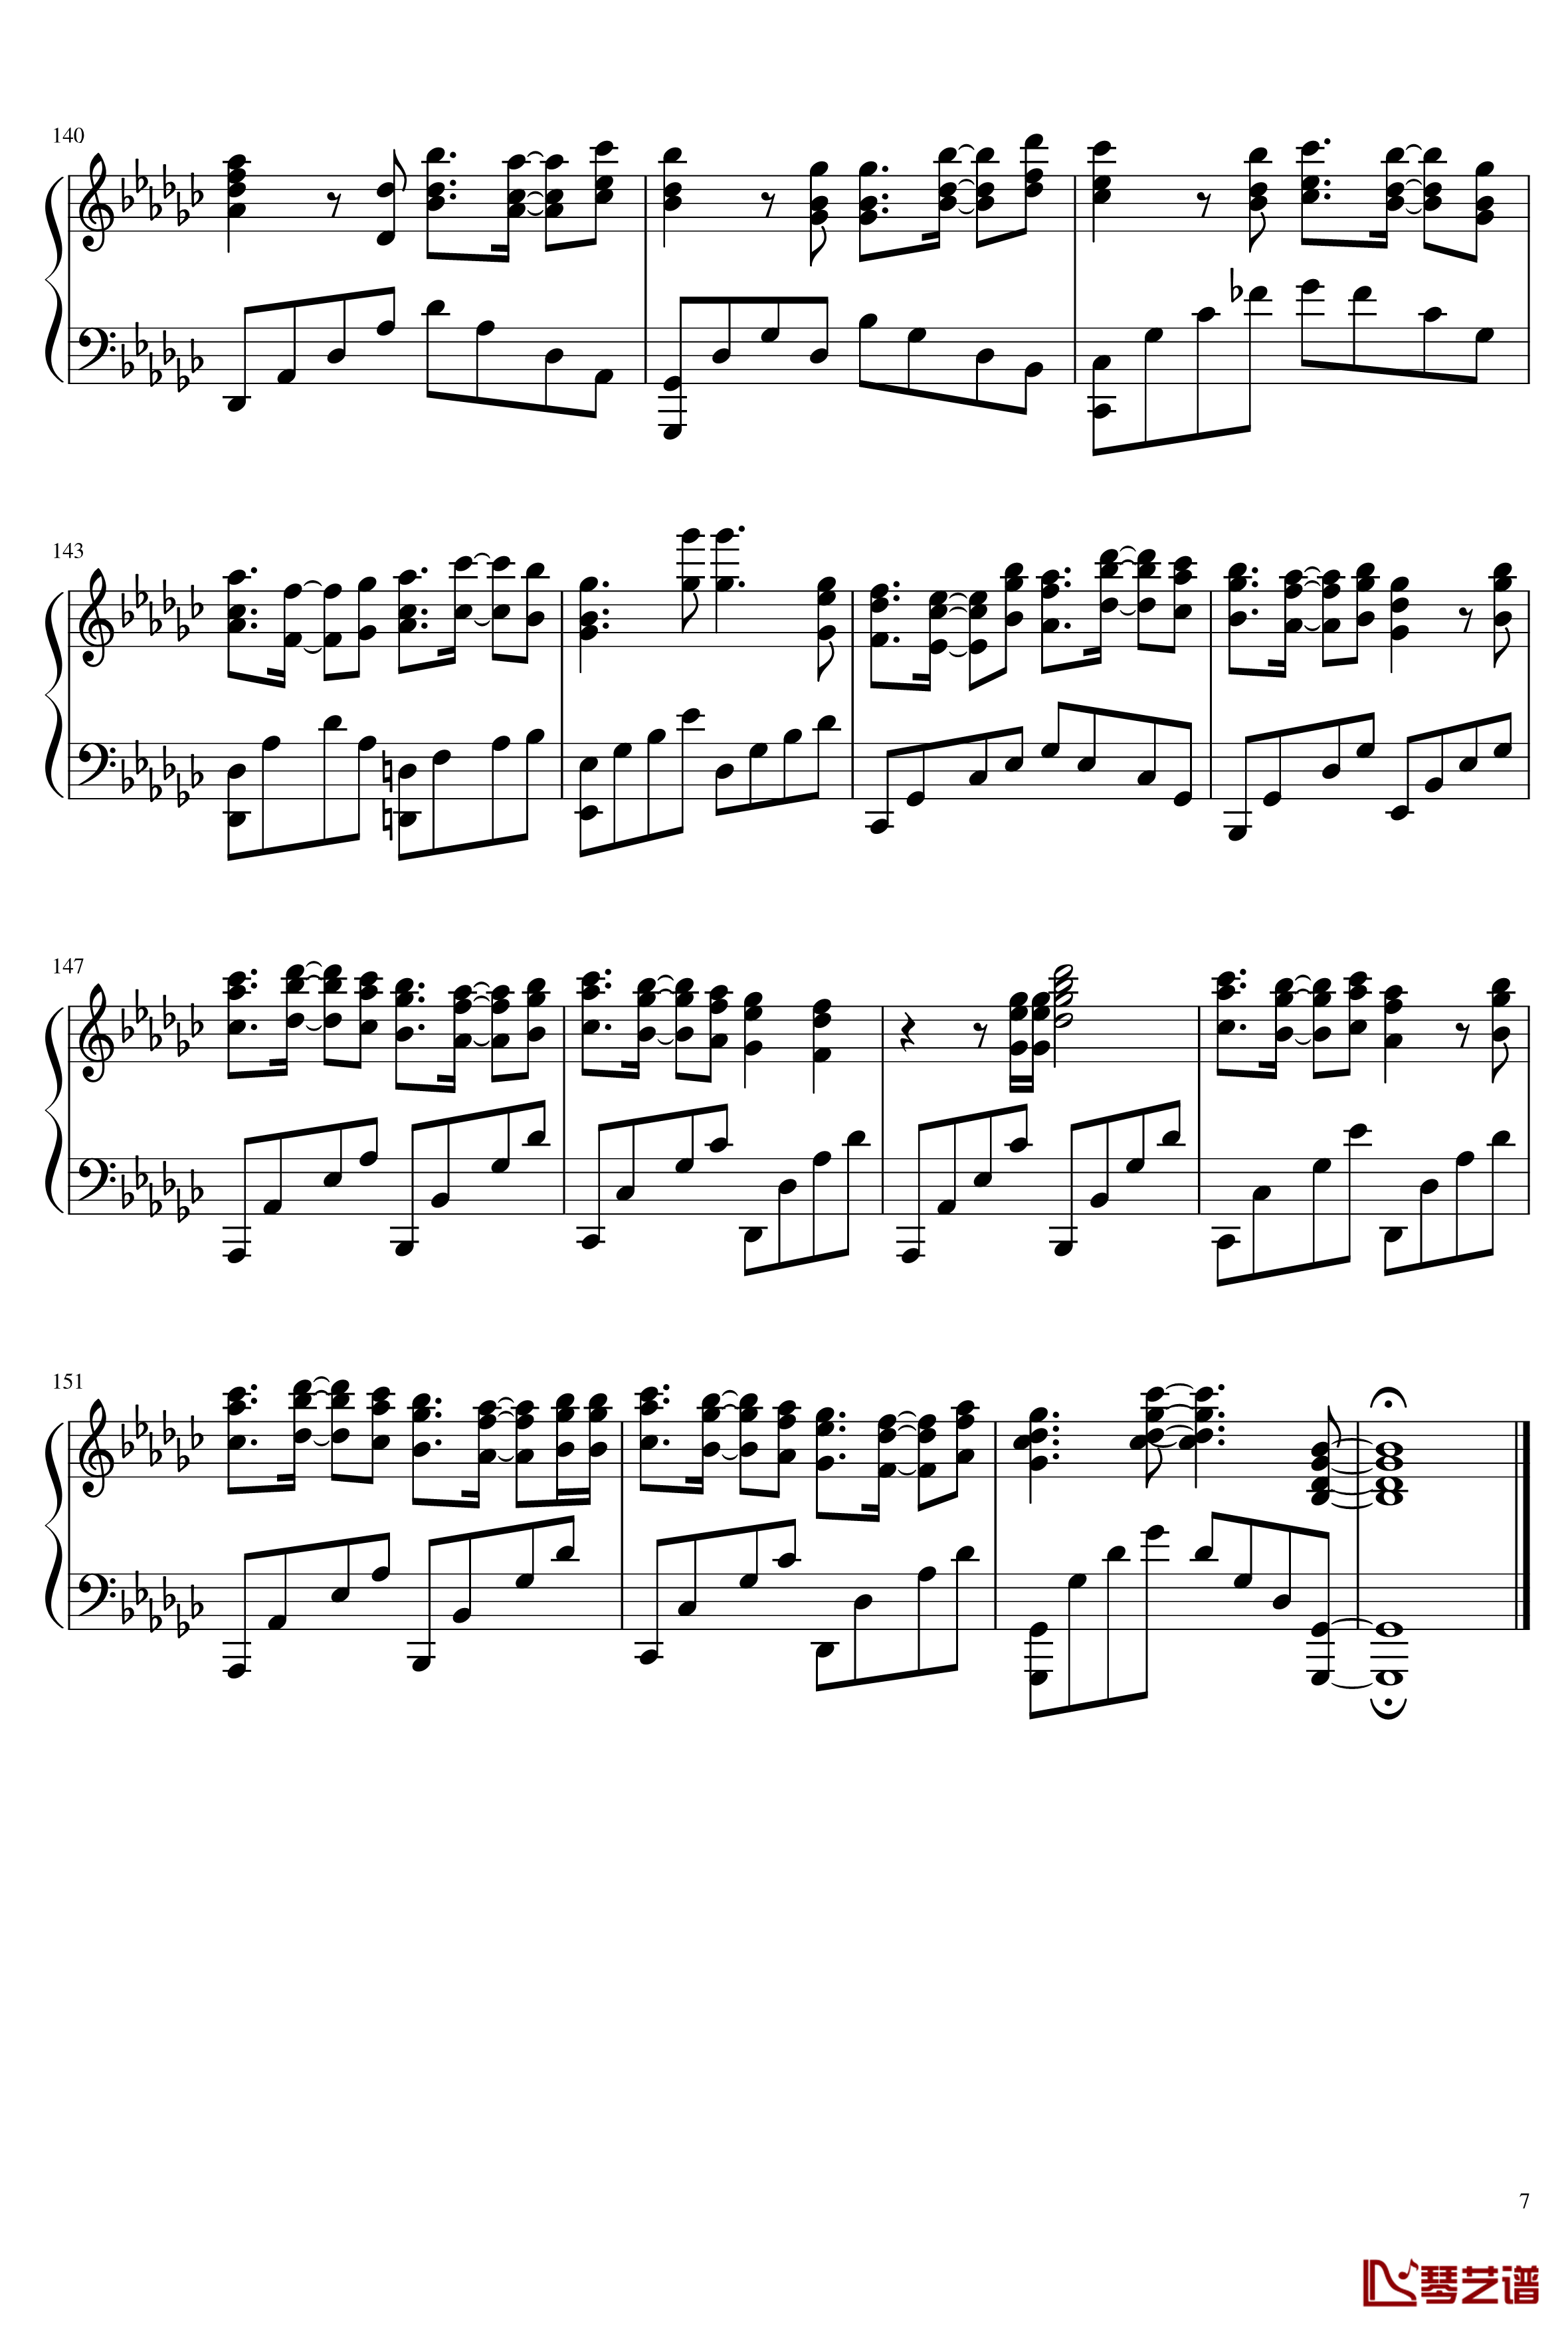 サヨナラの意味钢琴谱-乃木坂467